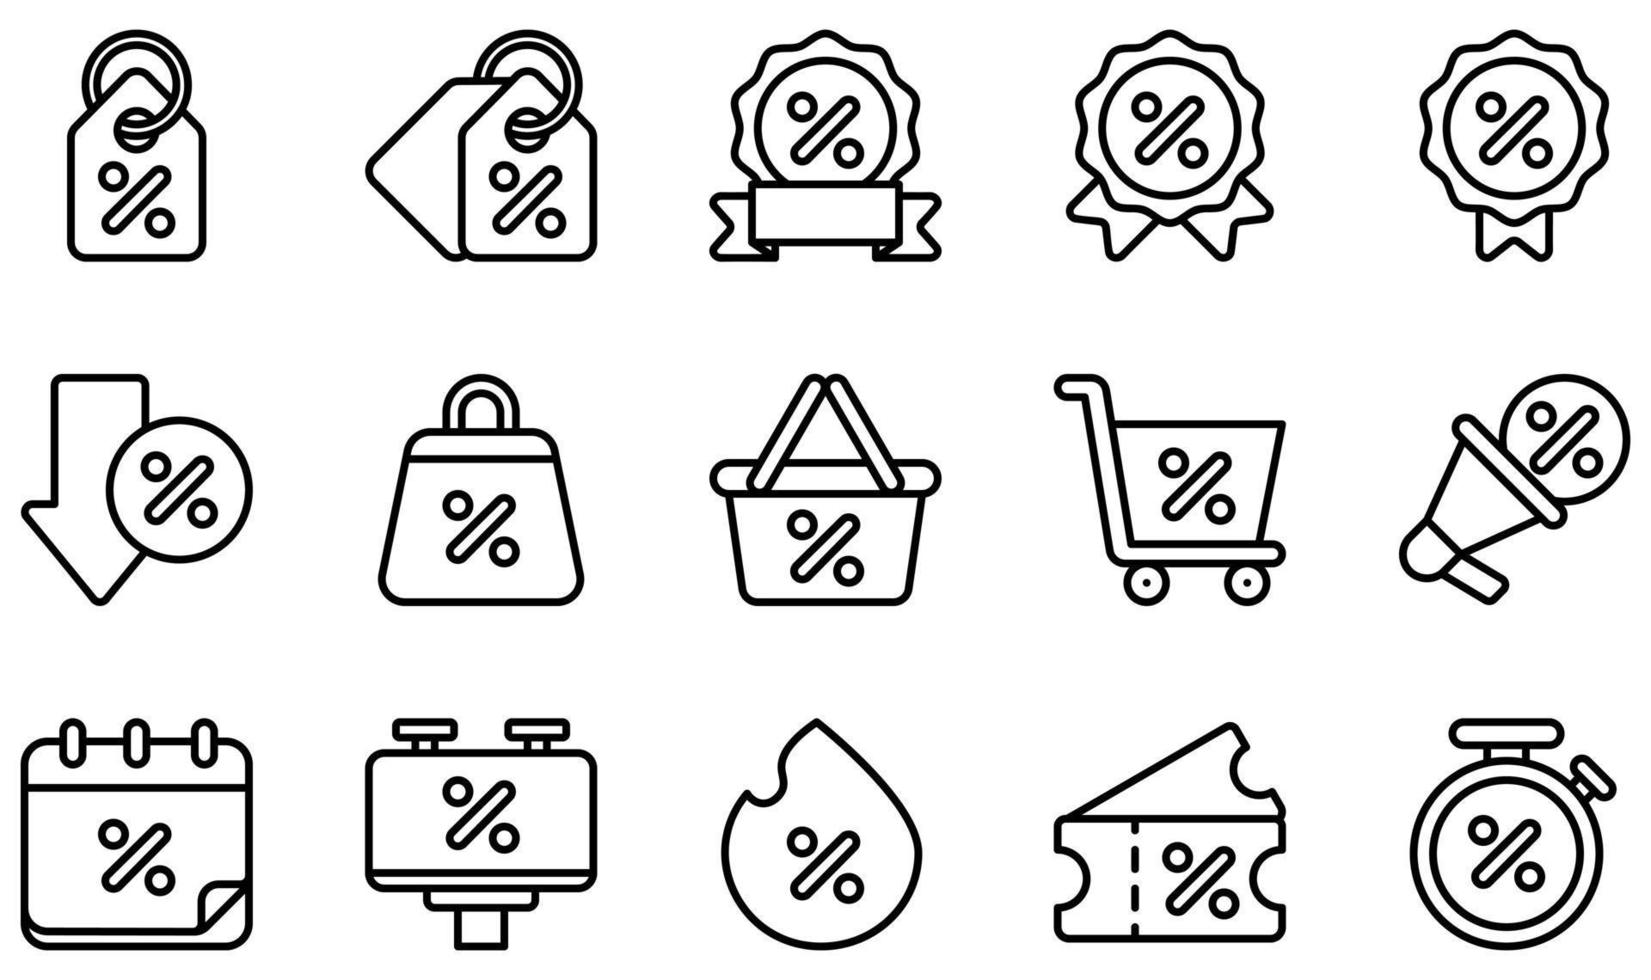 set di icone vettoriali relative allo sconto. contiene icone come tag, sconto, promozione, carrello, shopping, vendita calda e altro ancora.